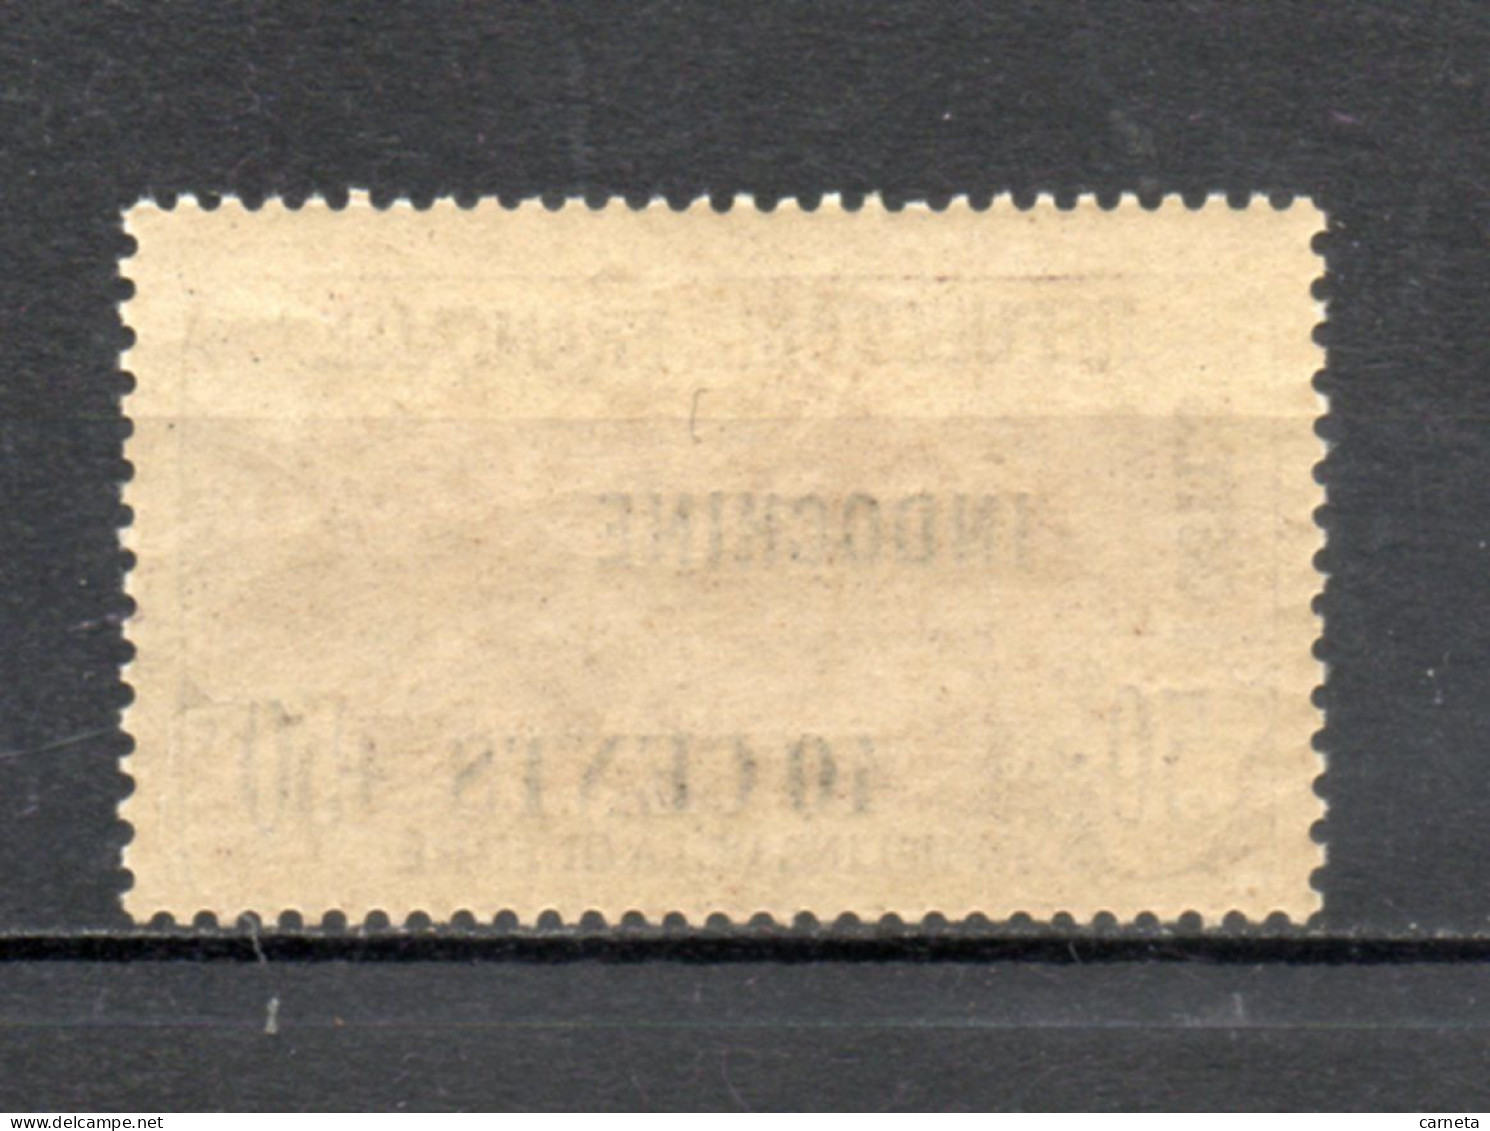 INDOCHINE  N° 93   NEUF AVEC CHARNIERE  20.00€     ORPHELINS DE GUERRE  SURCHARGE  VOIR DESCRIPTION - Unused Stamps